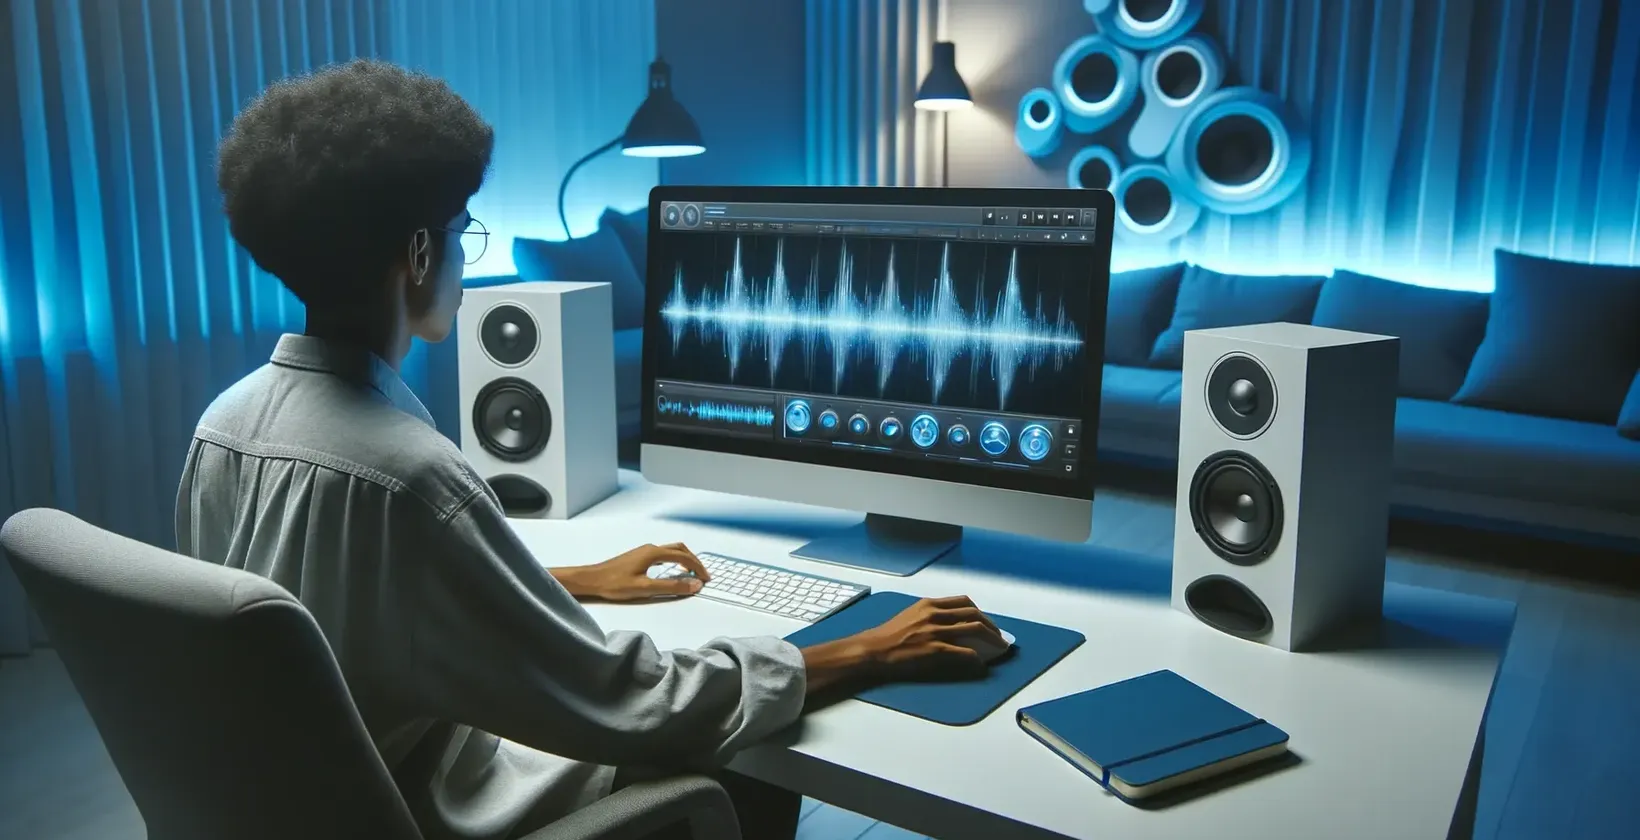 スピーカーのある近代的なスタジオ環境で、撮影されたビデオにテキストを追加するコンピューター作業をしている人。